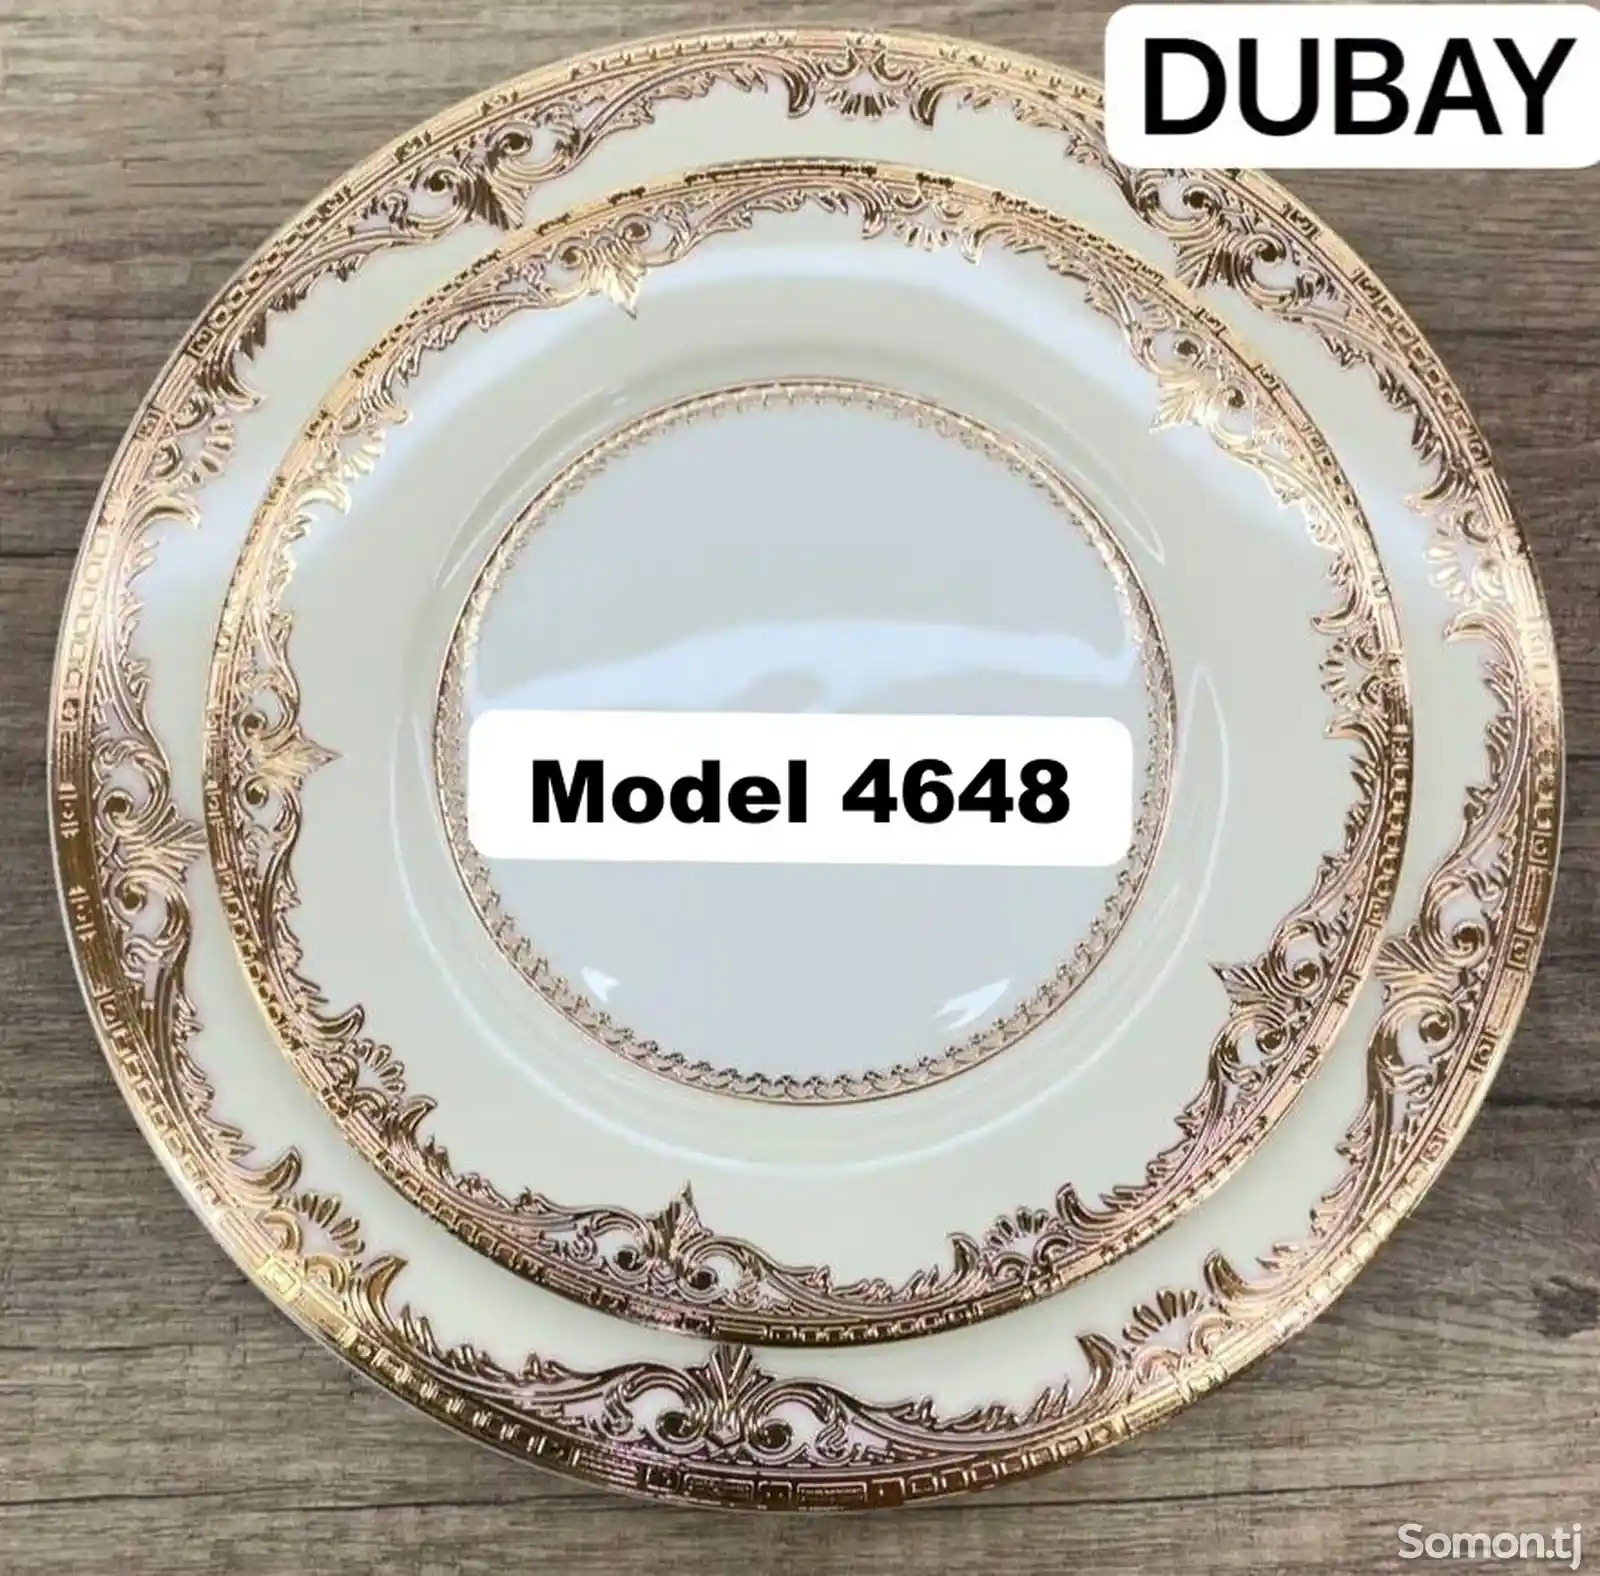 Набор посуды Dubai-4648 комплект 6-7